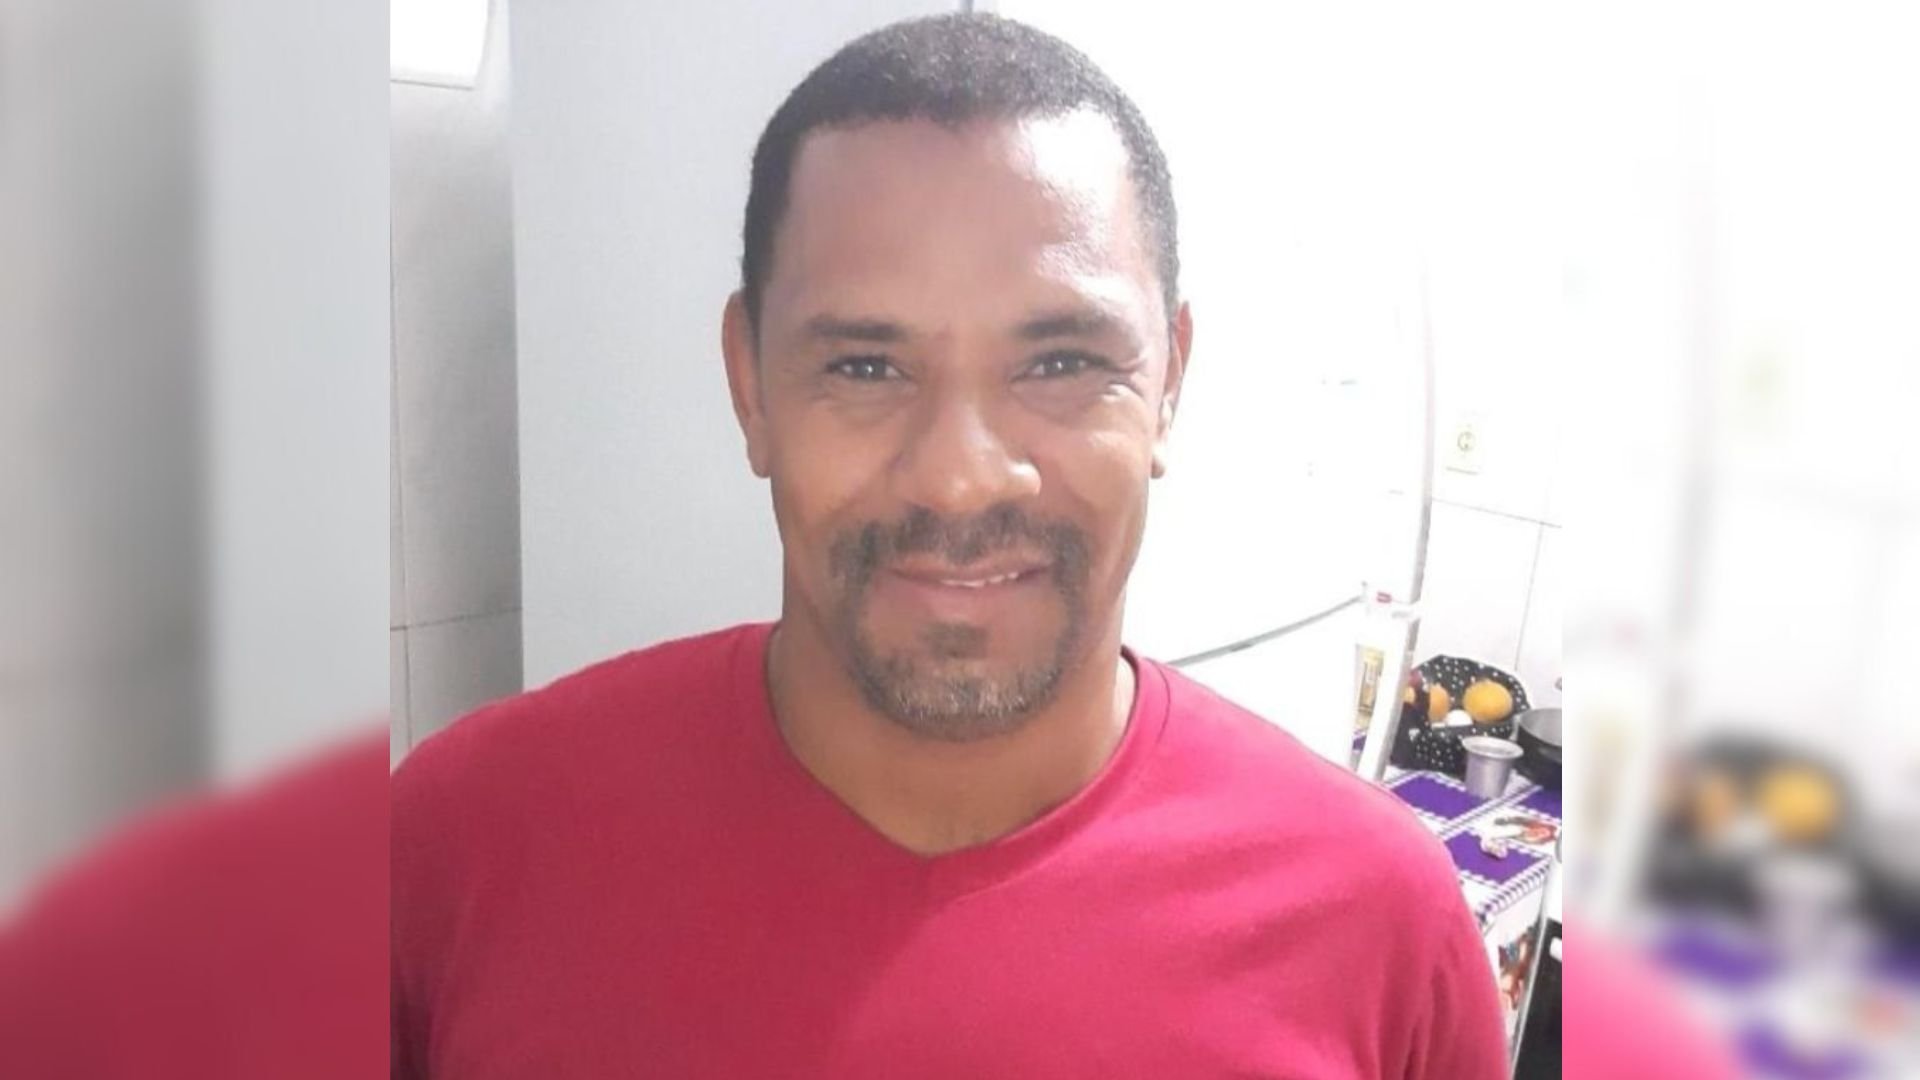 Edsney Cândido da Silva, de 43 anos, caiu em um tanque aquecido e teve queimaduras de segundo grau; ele passou por uma cirurgia e está em coma induzido